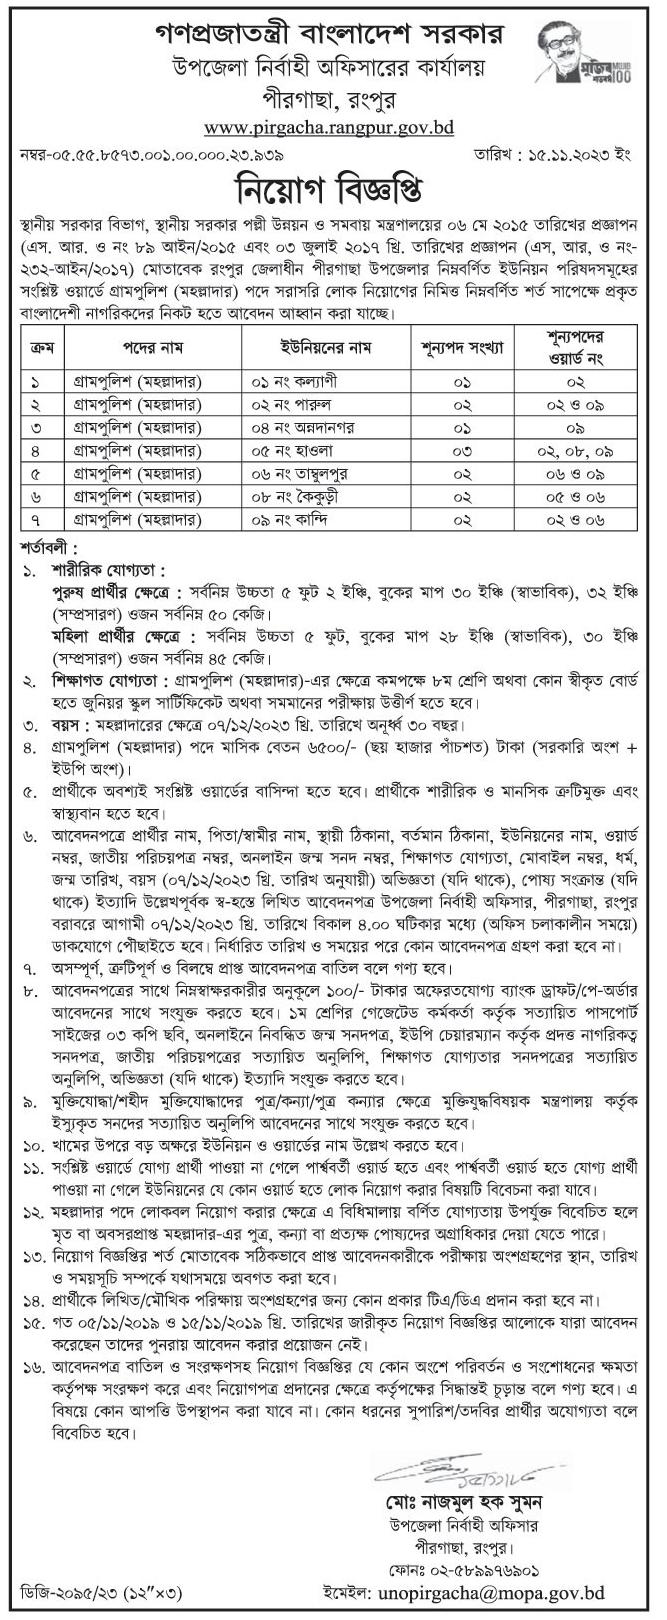 উপজেলা পরিষদ নিয়োগ বিজ্ঞপ্তি ২০২৩ - Upazila Parishad Job Circular 2023 - উপজেলা নির্বাহী অফিসারের কার্যালয় নিয়োগ বিজ্ঞপ্তি ২০২৩ - Upazila Nirbahi Officer Job Circular 2023 - স্থানীয় সরকার নিয়োগ বিজ্ঞপ্তি ২০২৩ - উপজেলা ভিত্তিক চাকরি 2023 - নিজ এলাকায় চাকরি 2023 - উপজেলা পরিষদ নিয়োগ বিজ্ঞপ্তি ২০২৪ - Upazila Parishad Job Circular 2024 - উপজেলা নির্বাহী অফিসারের কার্যালয় নিয়োগ বিজ্ঞপ্তি ২০২৪ - Upazila Nirbahi Officer Job Circular 2024 - উপজেলা ভিত্তিক চাকরি 202৪ - নিজ এলাকায় চাকরি 2024 - LGED Job Circular 2023